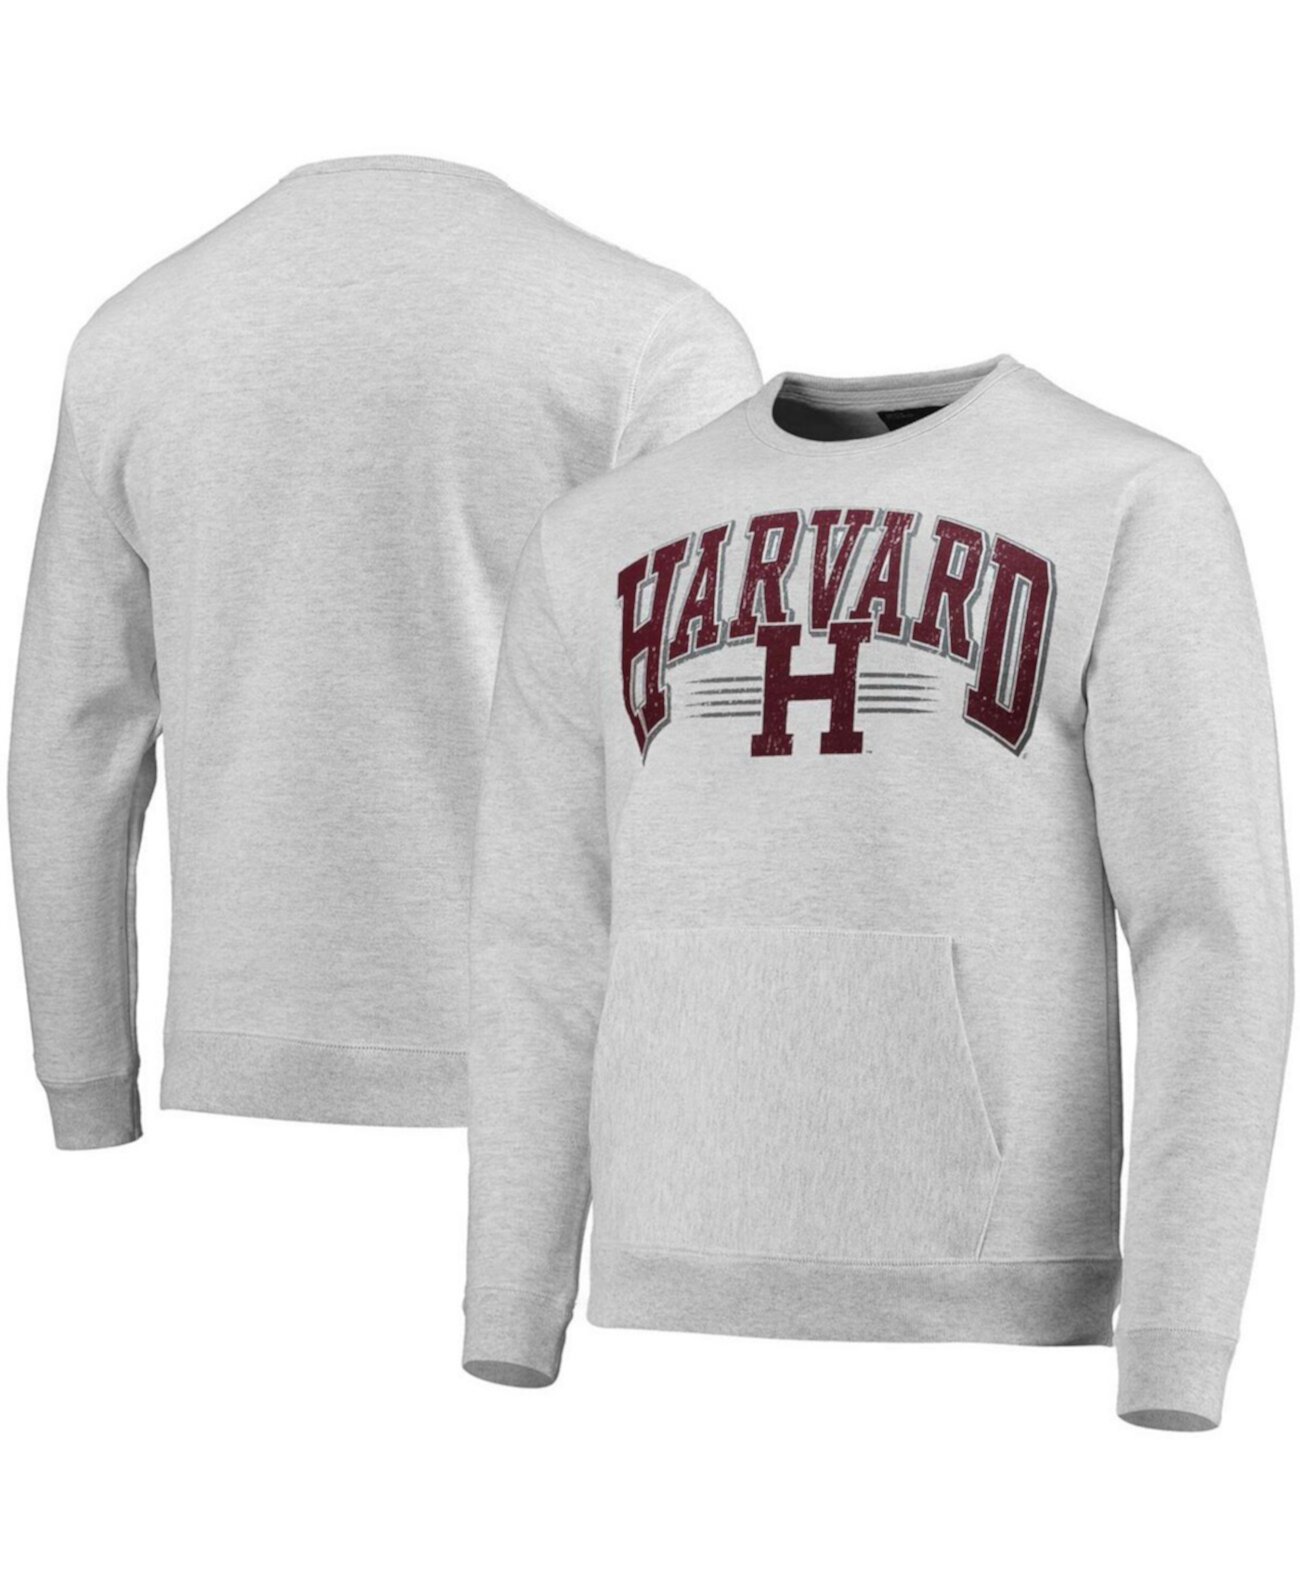 Мужская толстовка с карманом и карманом Harvard Grey с меланжевым принтом для старшеклассников League Collegiate Wear